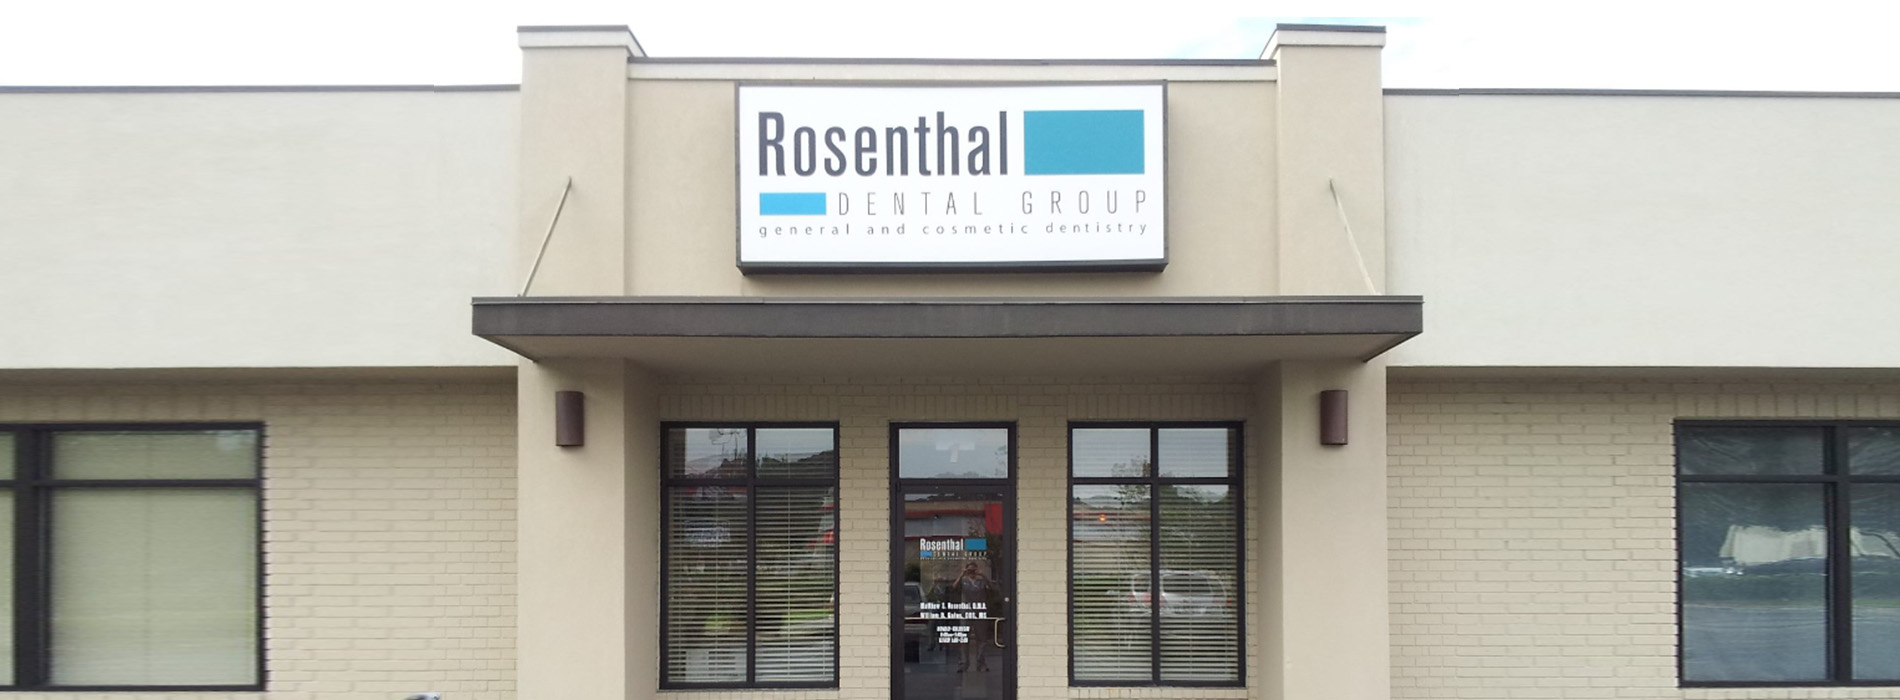 Rosenthal Dental Group